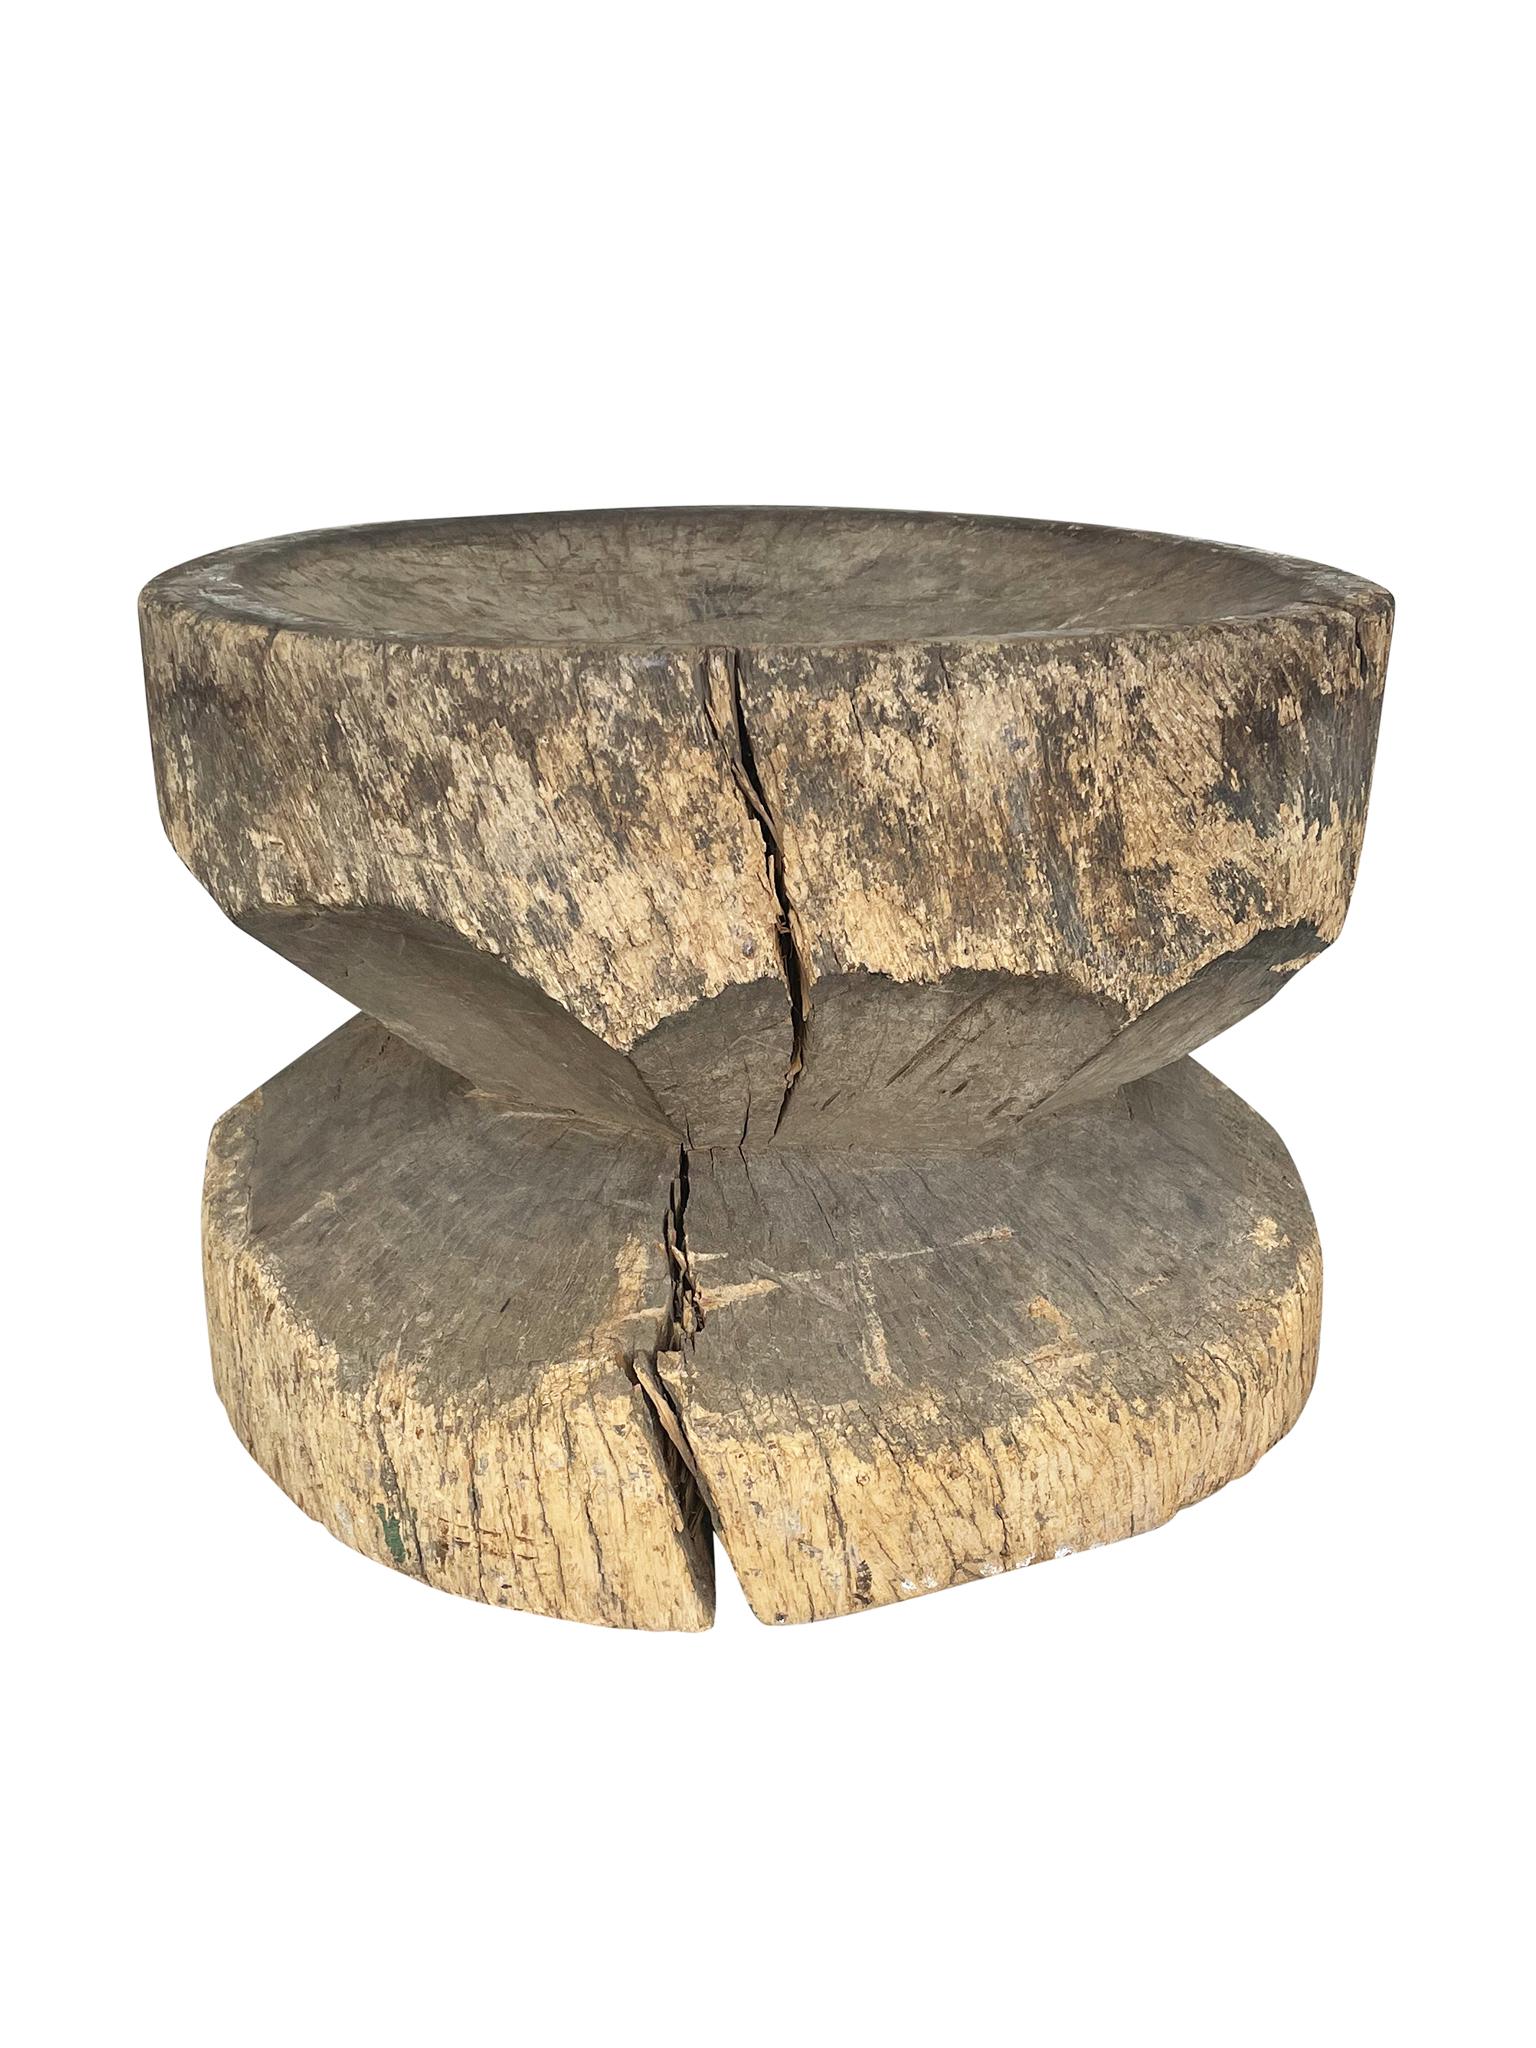 Dieser runde Beistelltisch wurde im 20. Jahrhundert handgeschnitzt. Wir lieben seine reich strukturierte, behauene Oberfläche und die organischen Eigenschaften des Holzes.

Abmessungen:
23,5 Zoll Durchmesser
17,5 Zoll Höhe

Anmerkungen zum